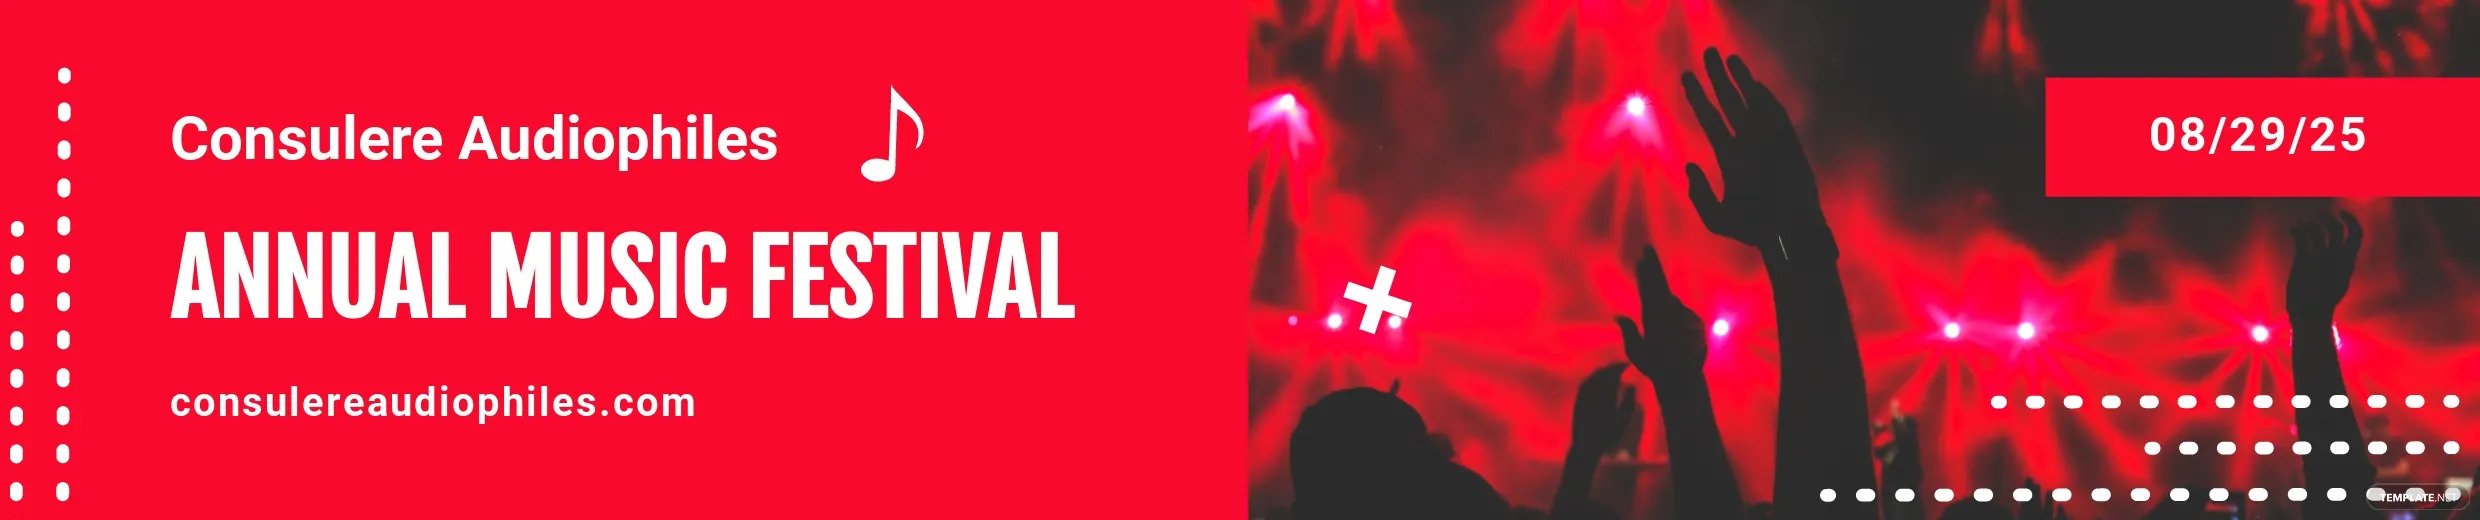 festival annuel de musique soundcloud idées et exemples de bannières